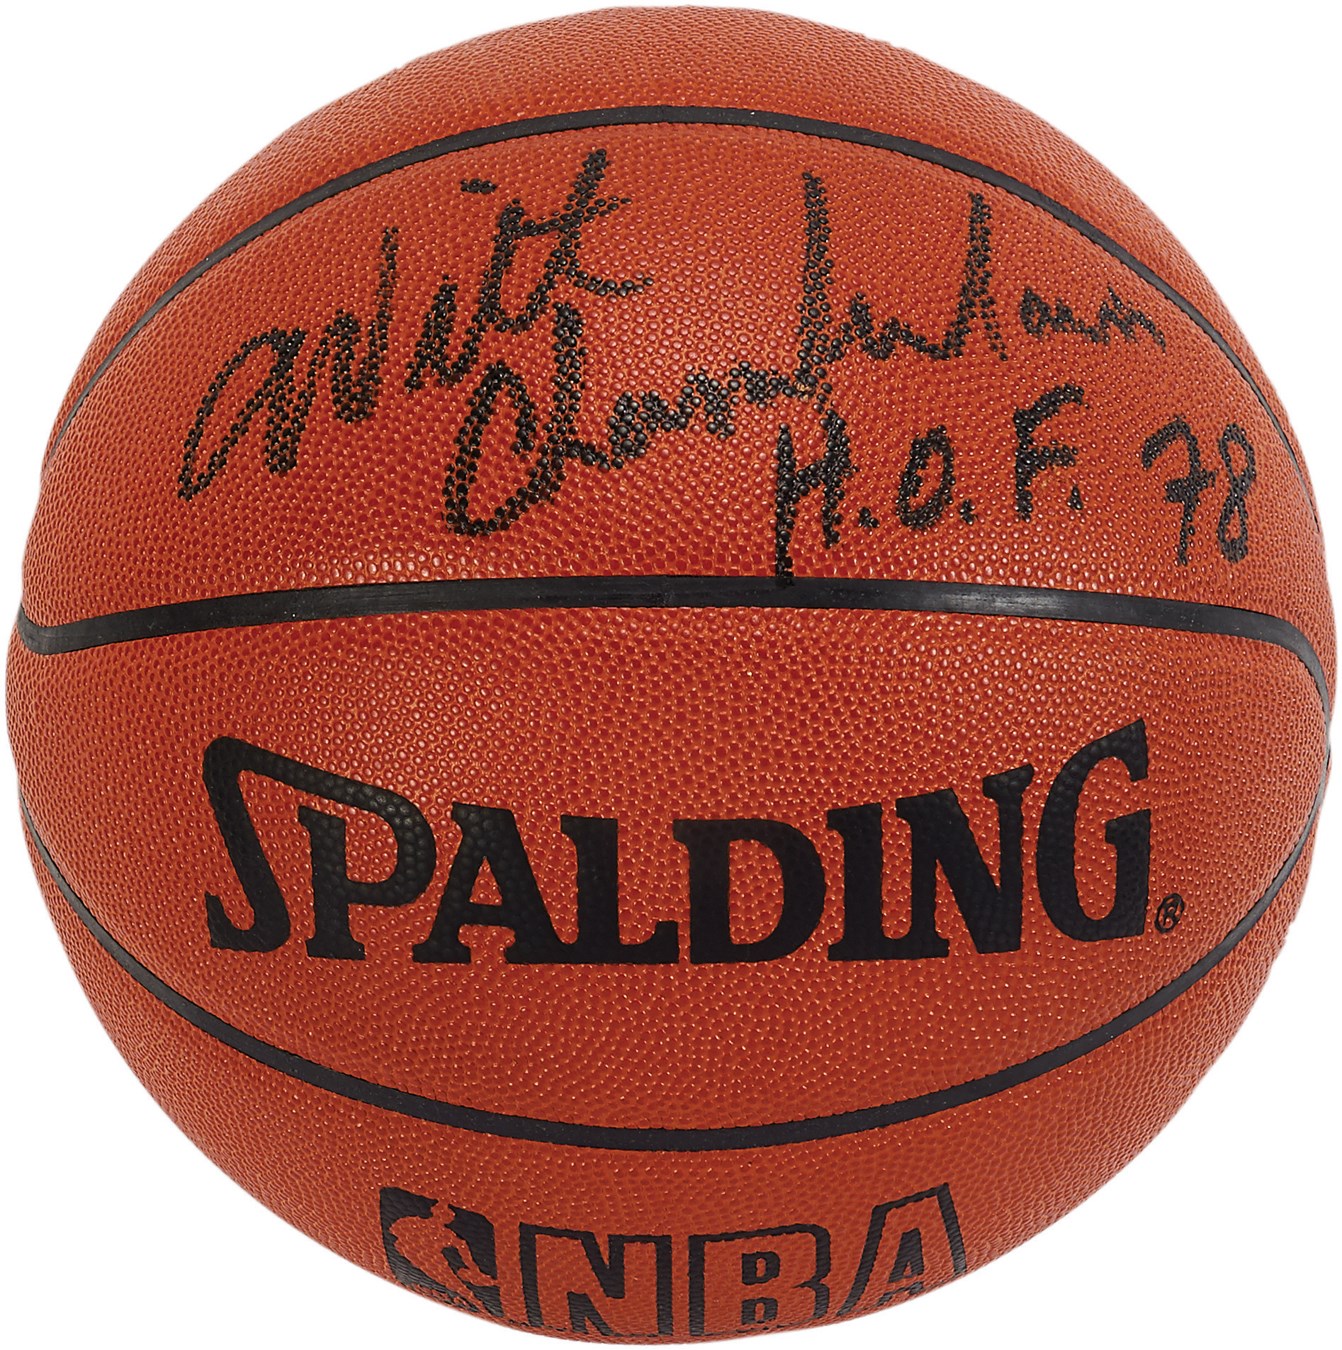 Wilt Chamberlain Signed "HOF 78" Basketball